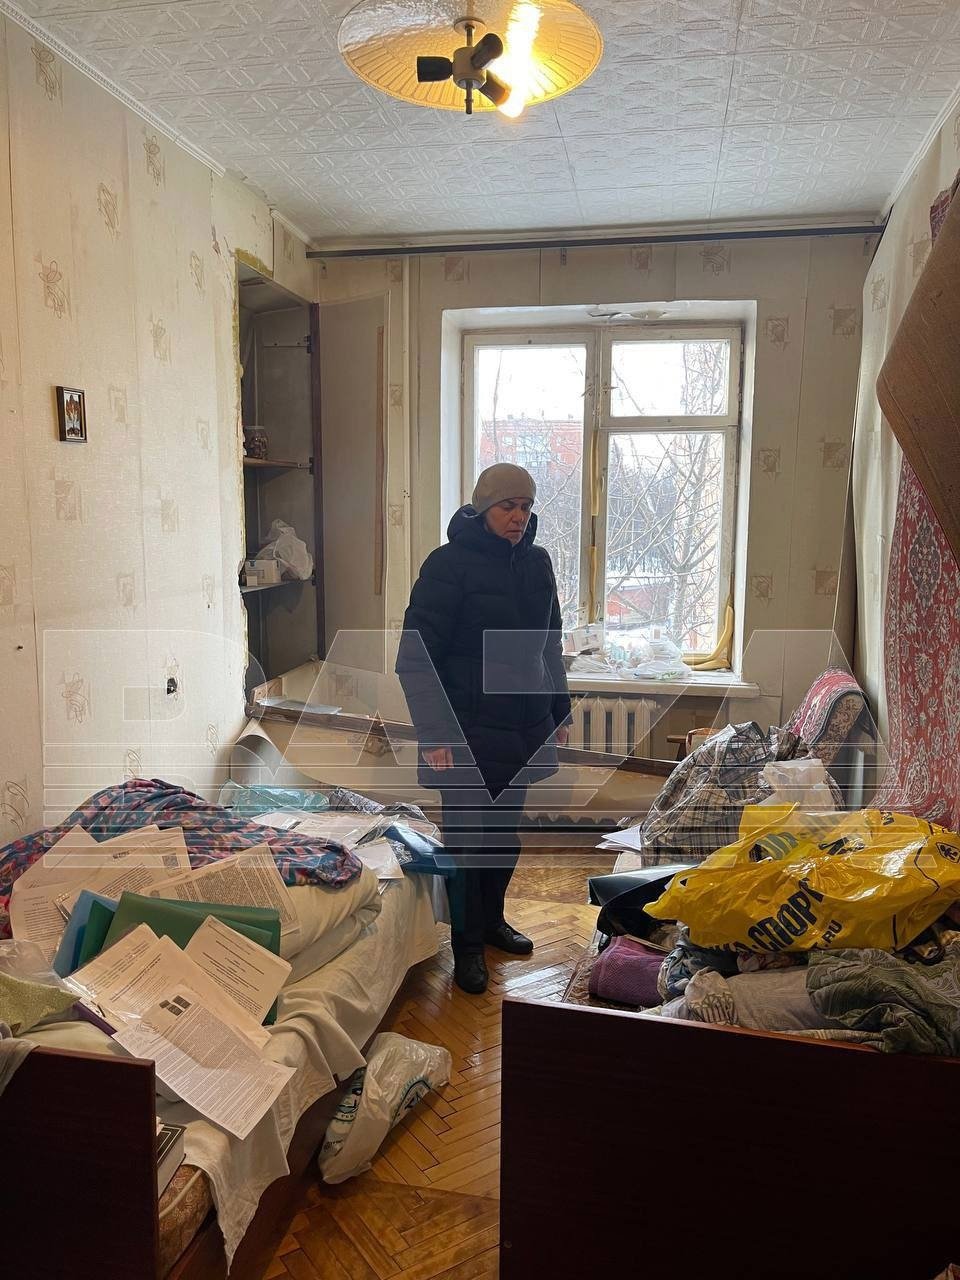 Квартира педиатра Надежды Буяновой, делом которой занимался Бастрыкин, после обыска. Из поликлиники ее уволили